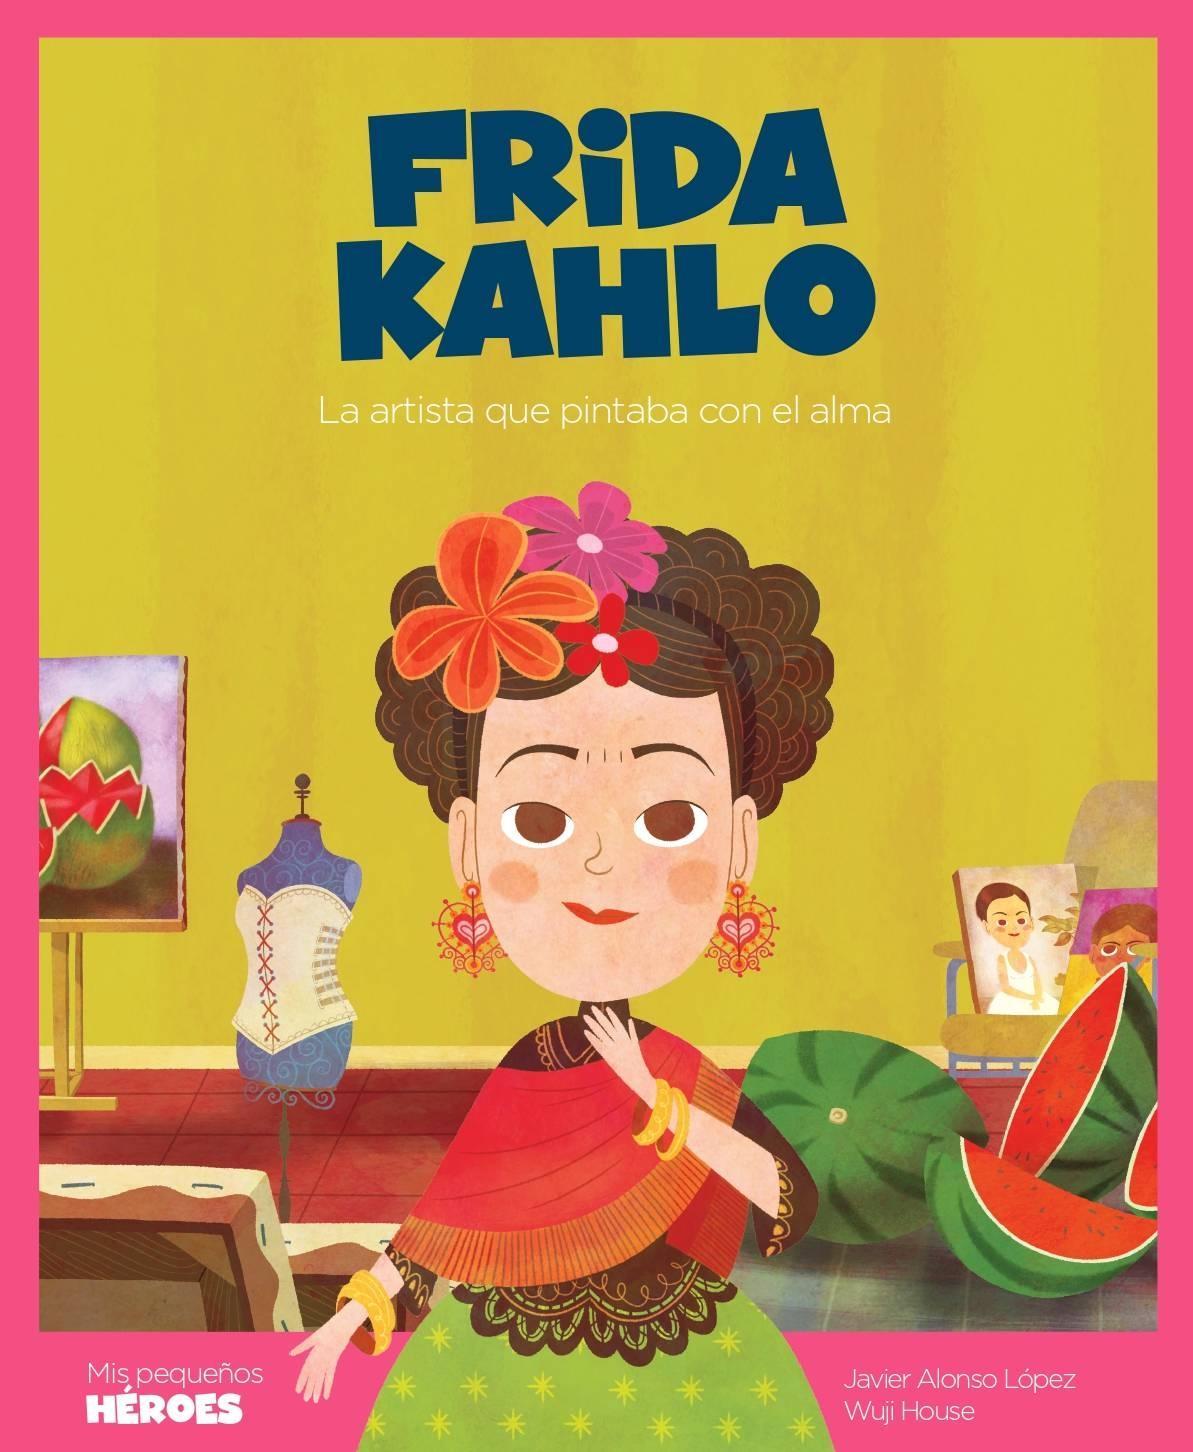 Frida Kahlo "La artista que pintaba con el alma"